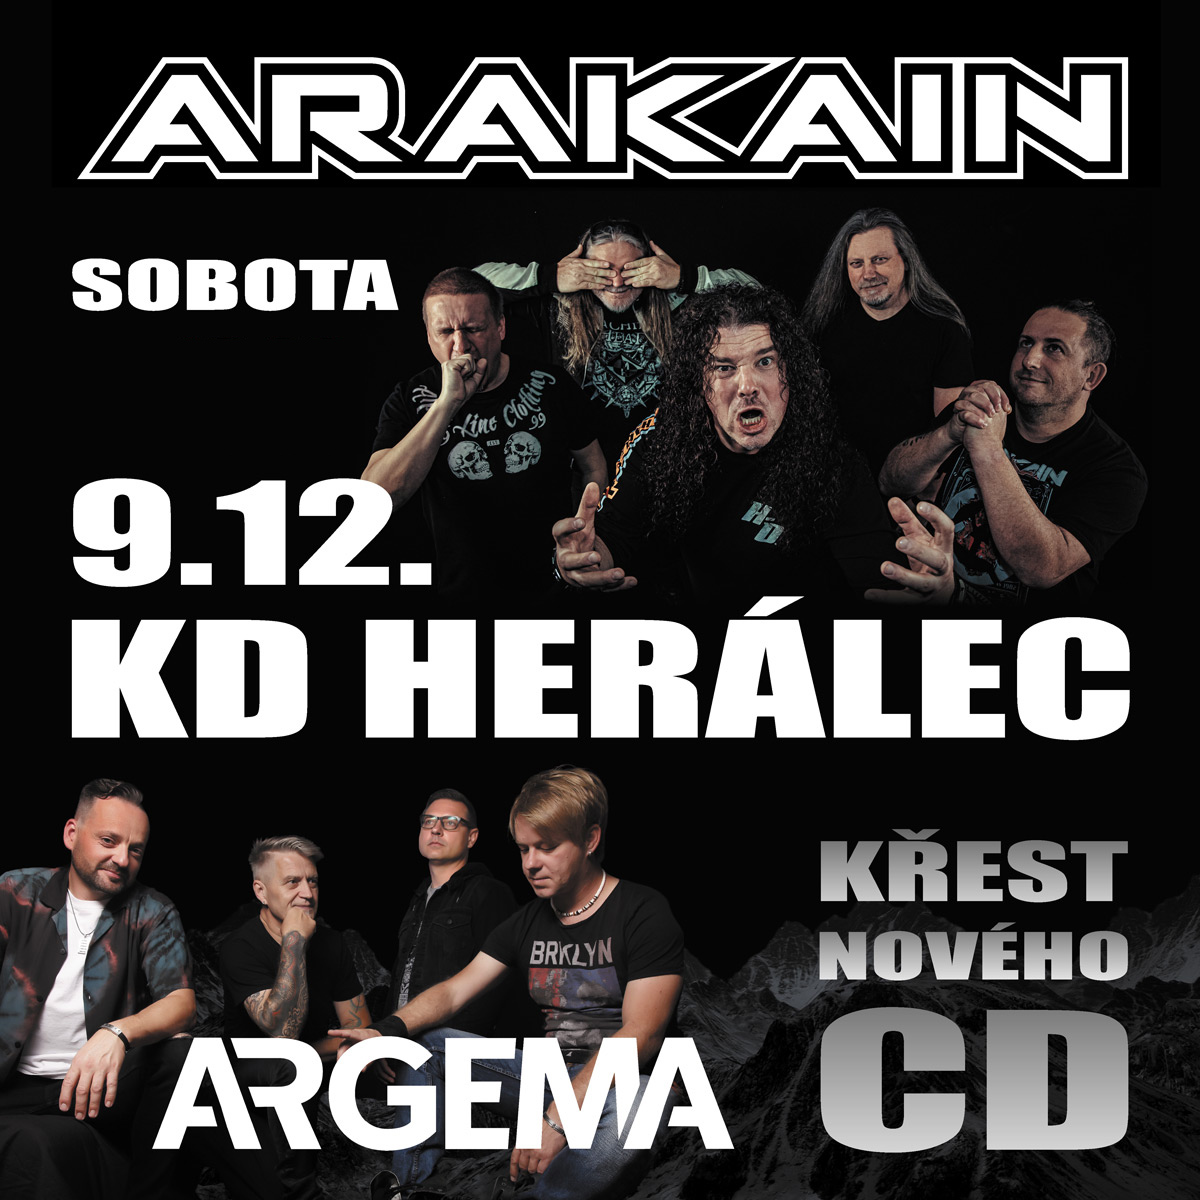 ARAKAIN + ARGEMA- koncert Herálec -KD Herálec Herálec